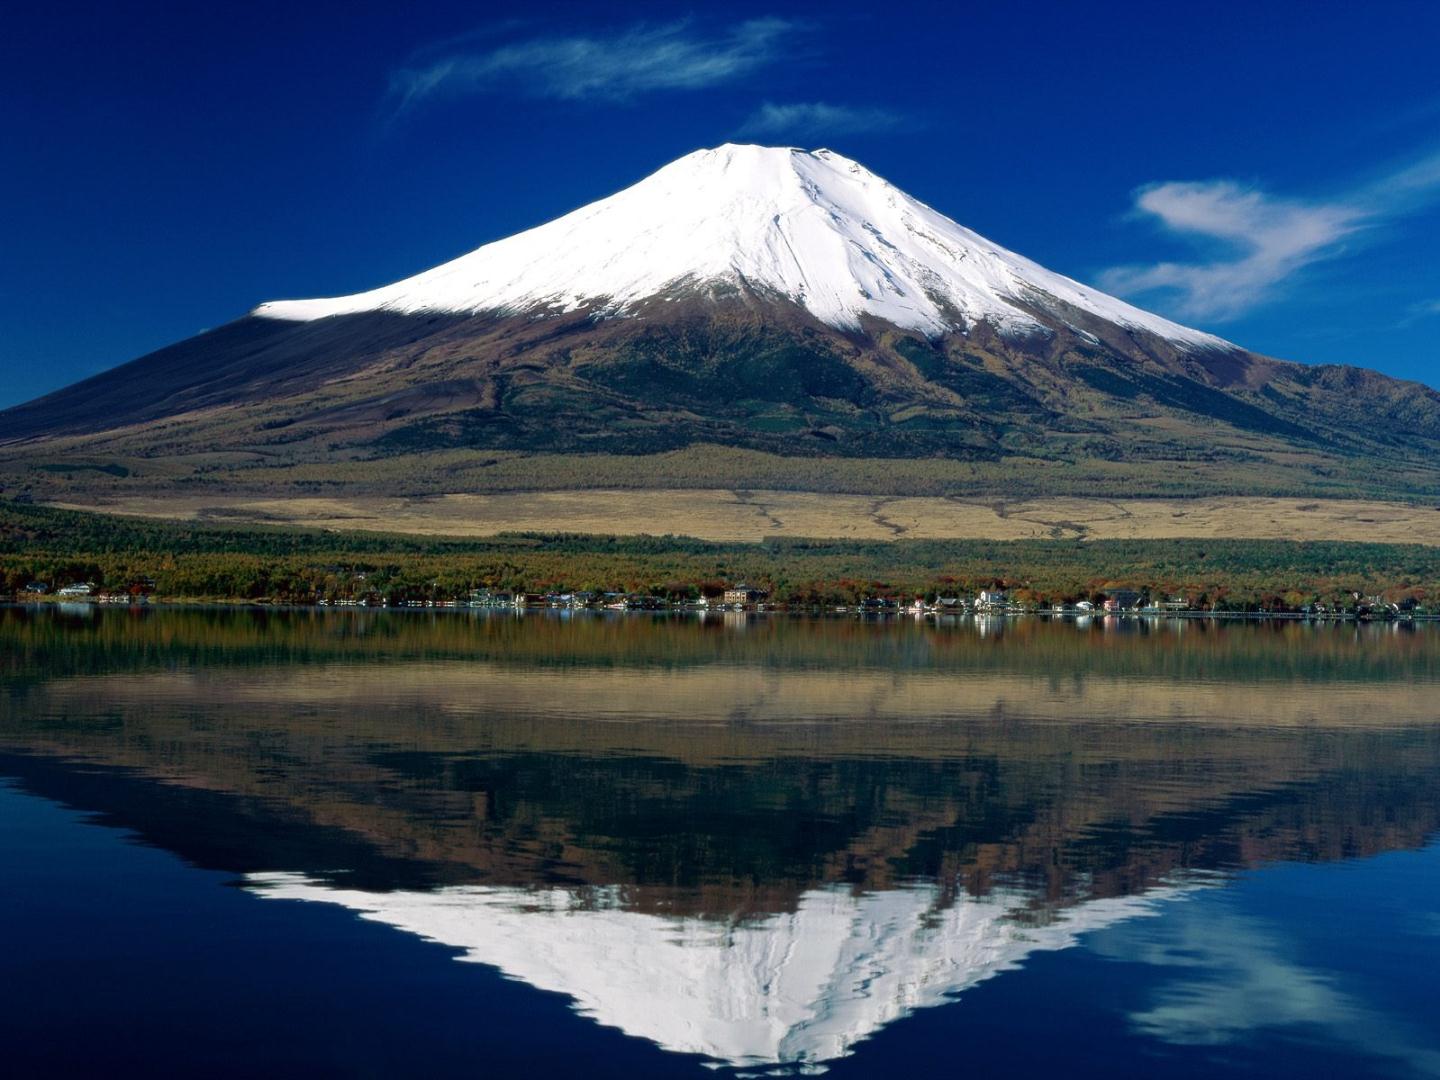 Mount Fuji Japan Wallpaper